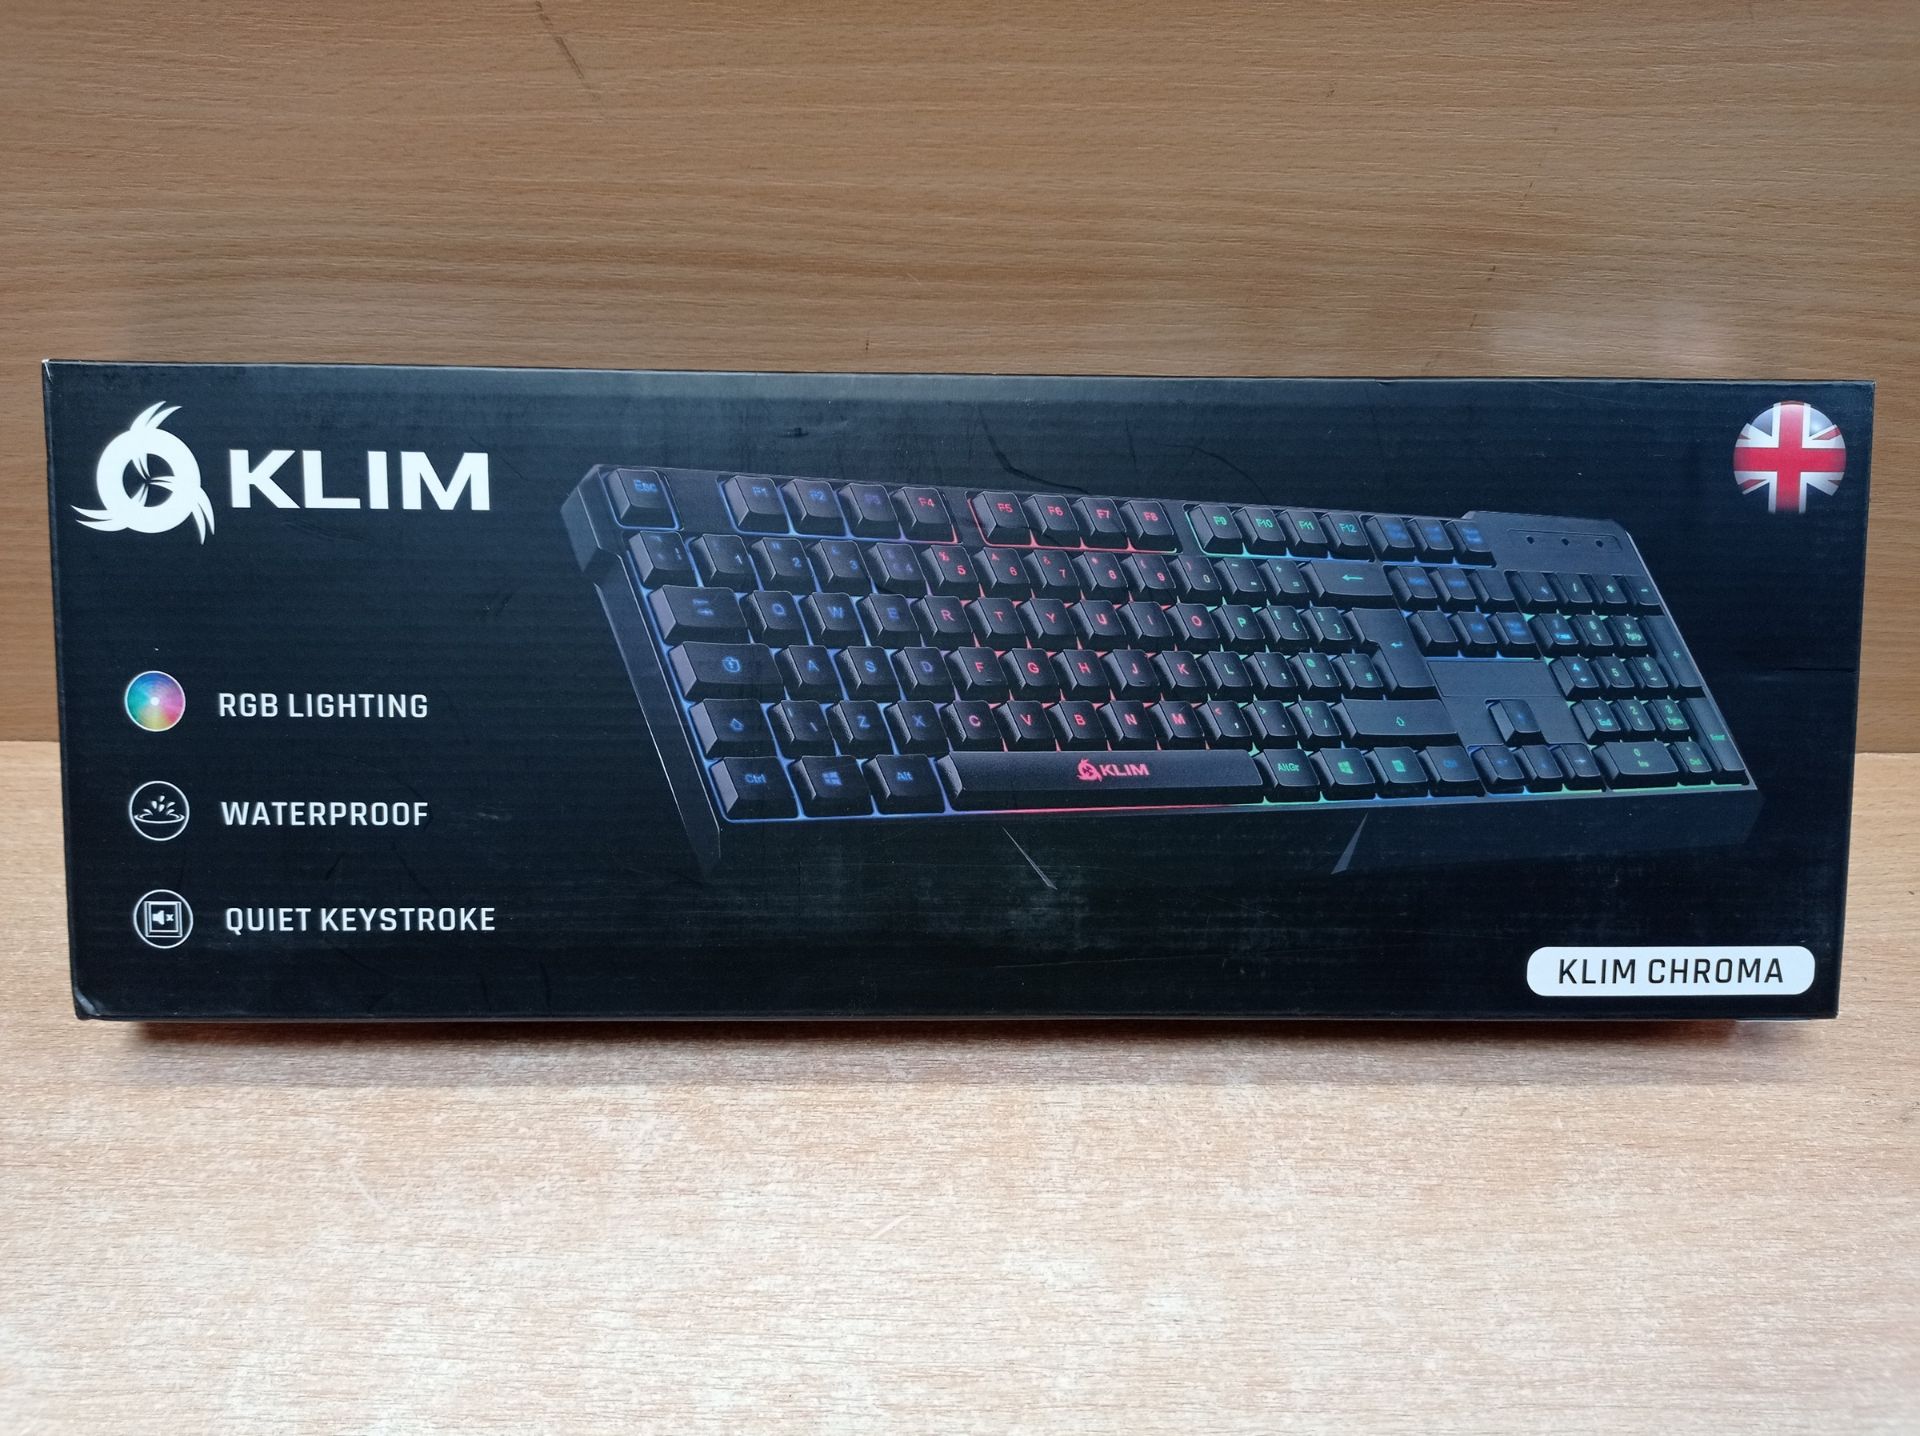 RRP £22.81 KLIM Chroma Gaming Keyboard Wired USB - Image 2 of 2